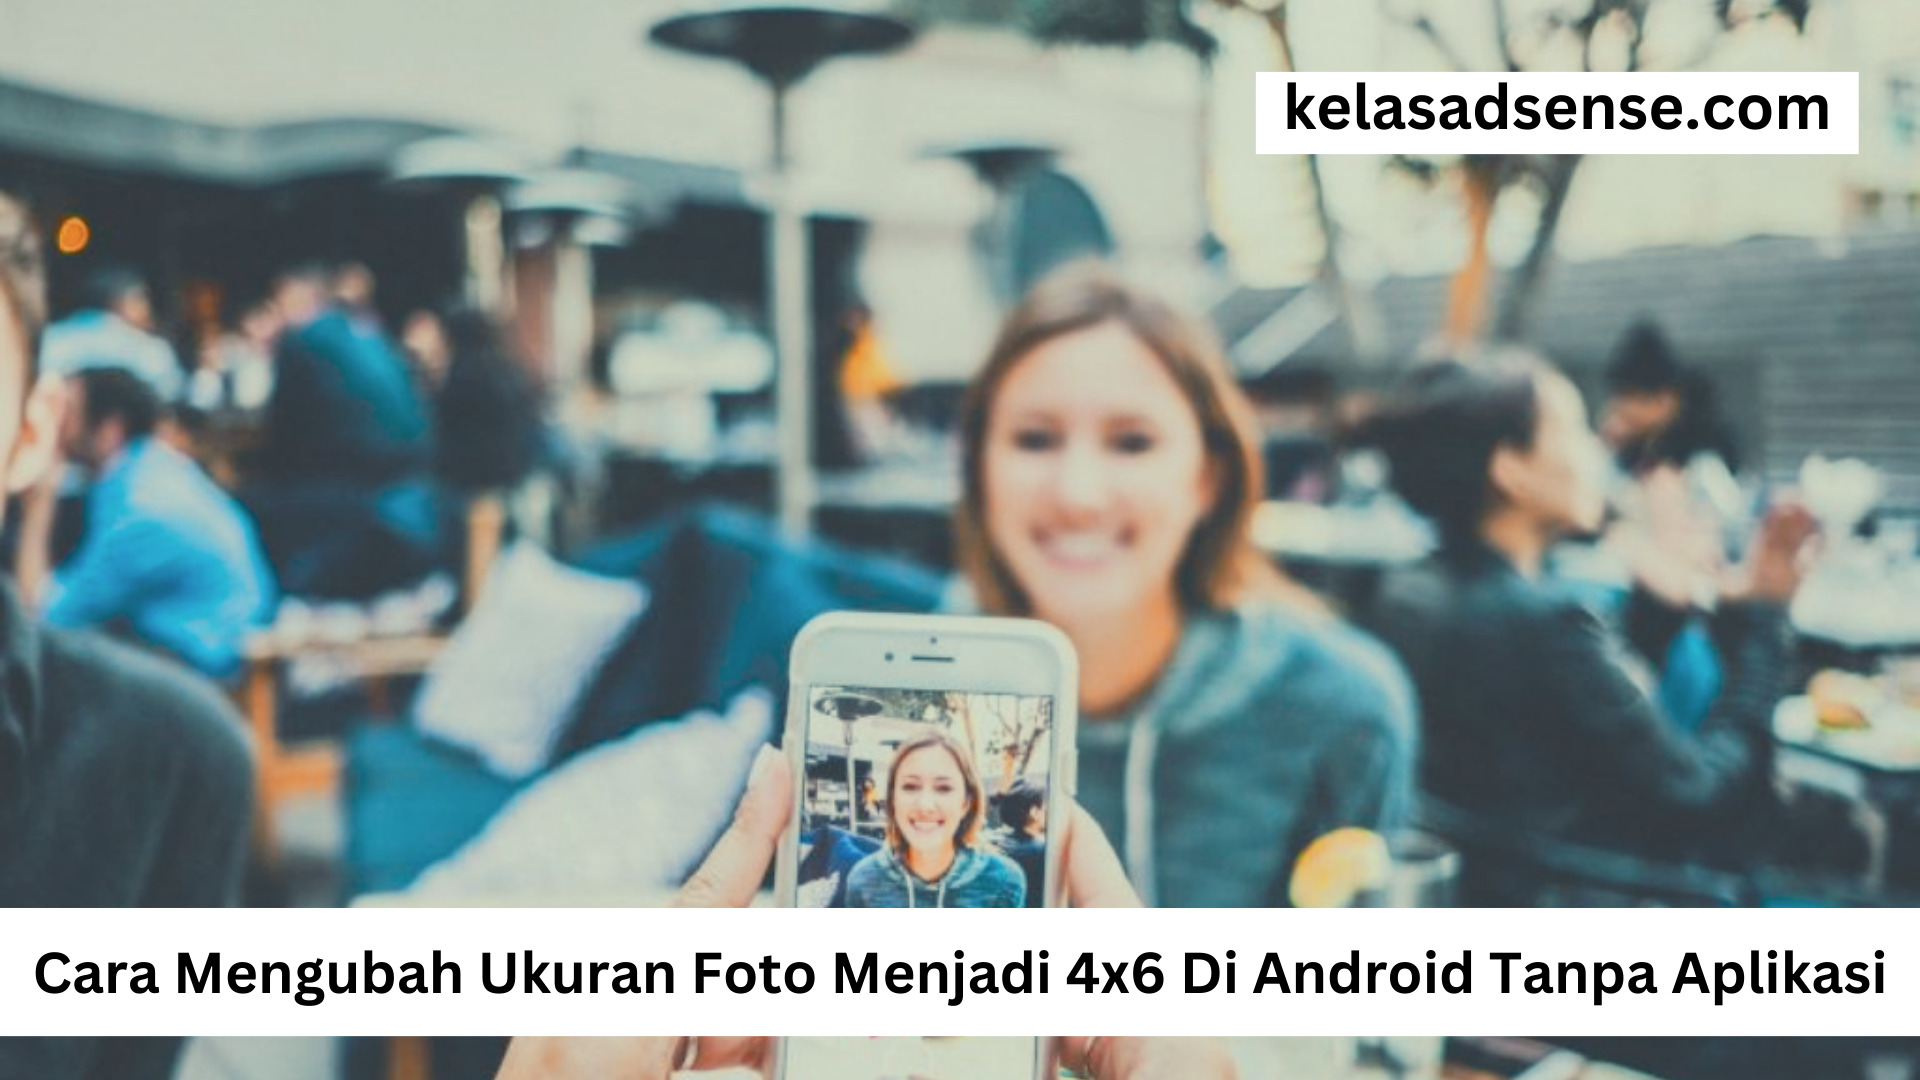 Cara Mengubah Ukuran Foto Menjadi 4x6 Di Android Tanpa Aplikasi